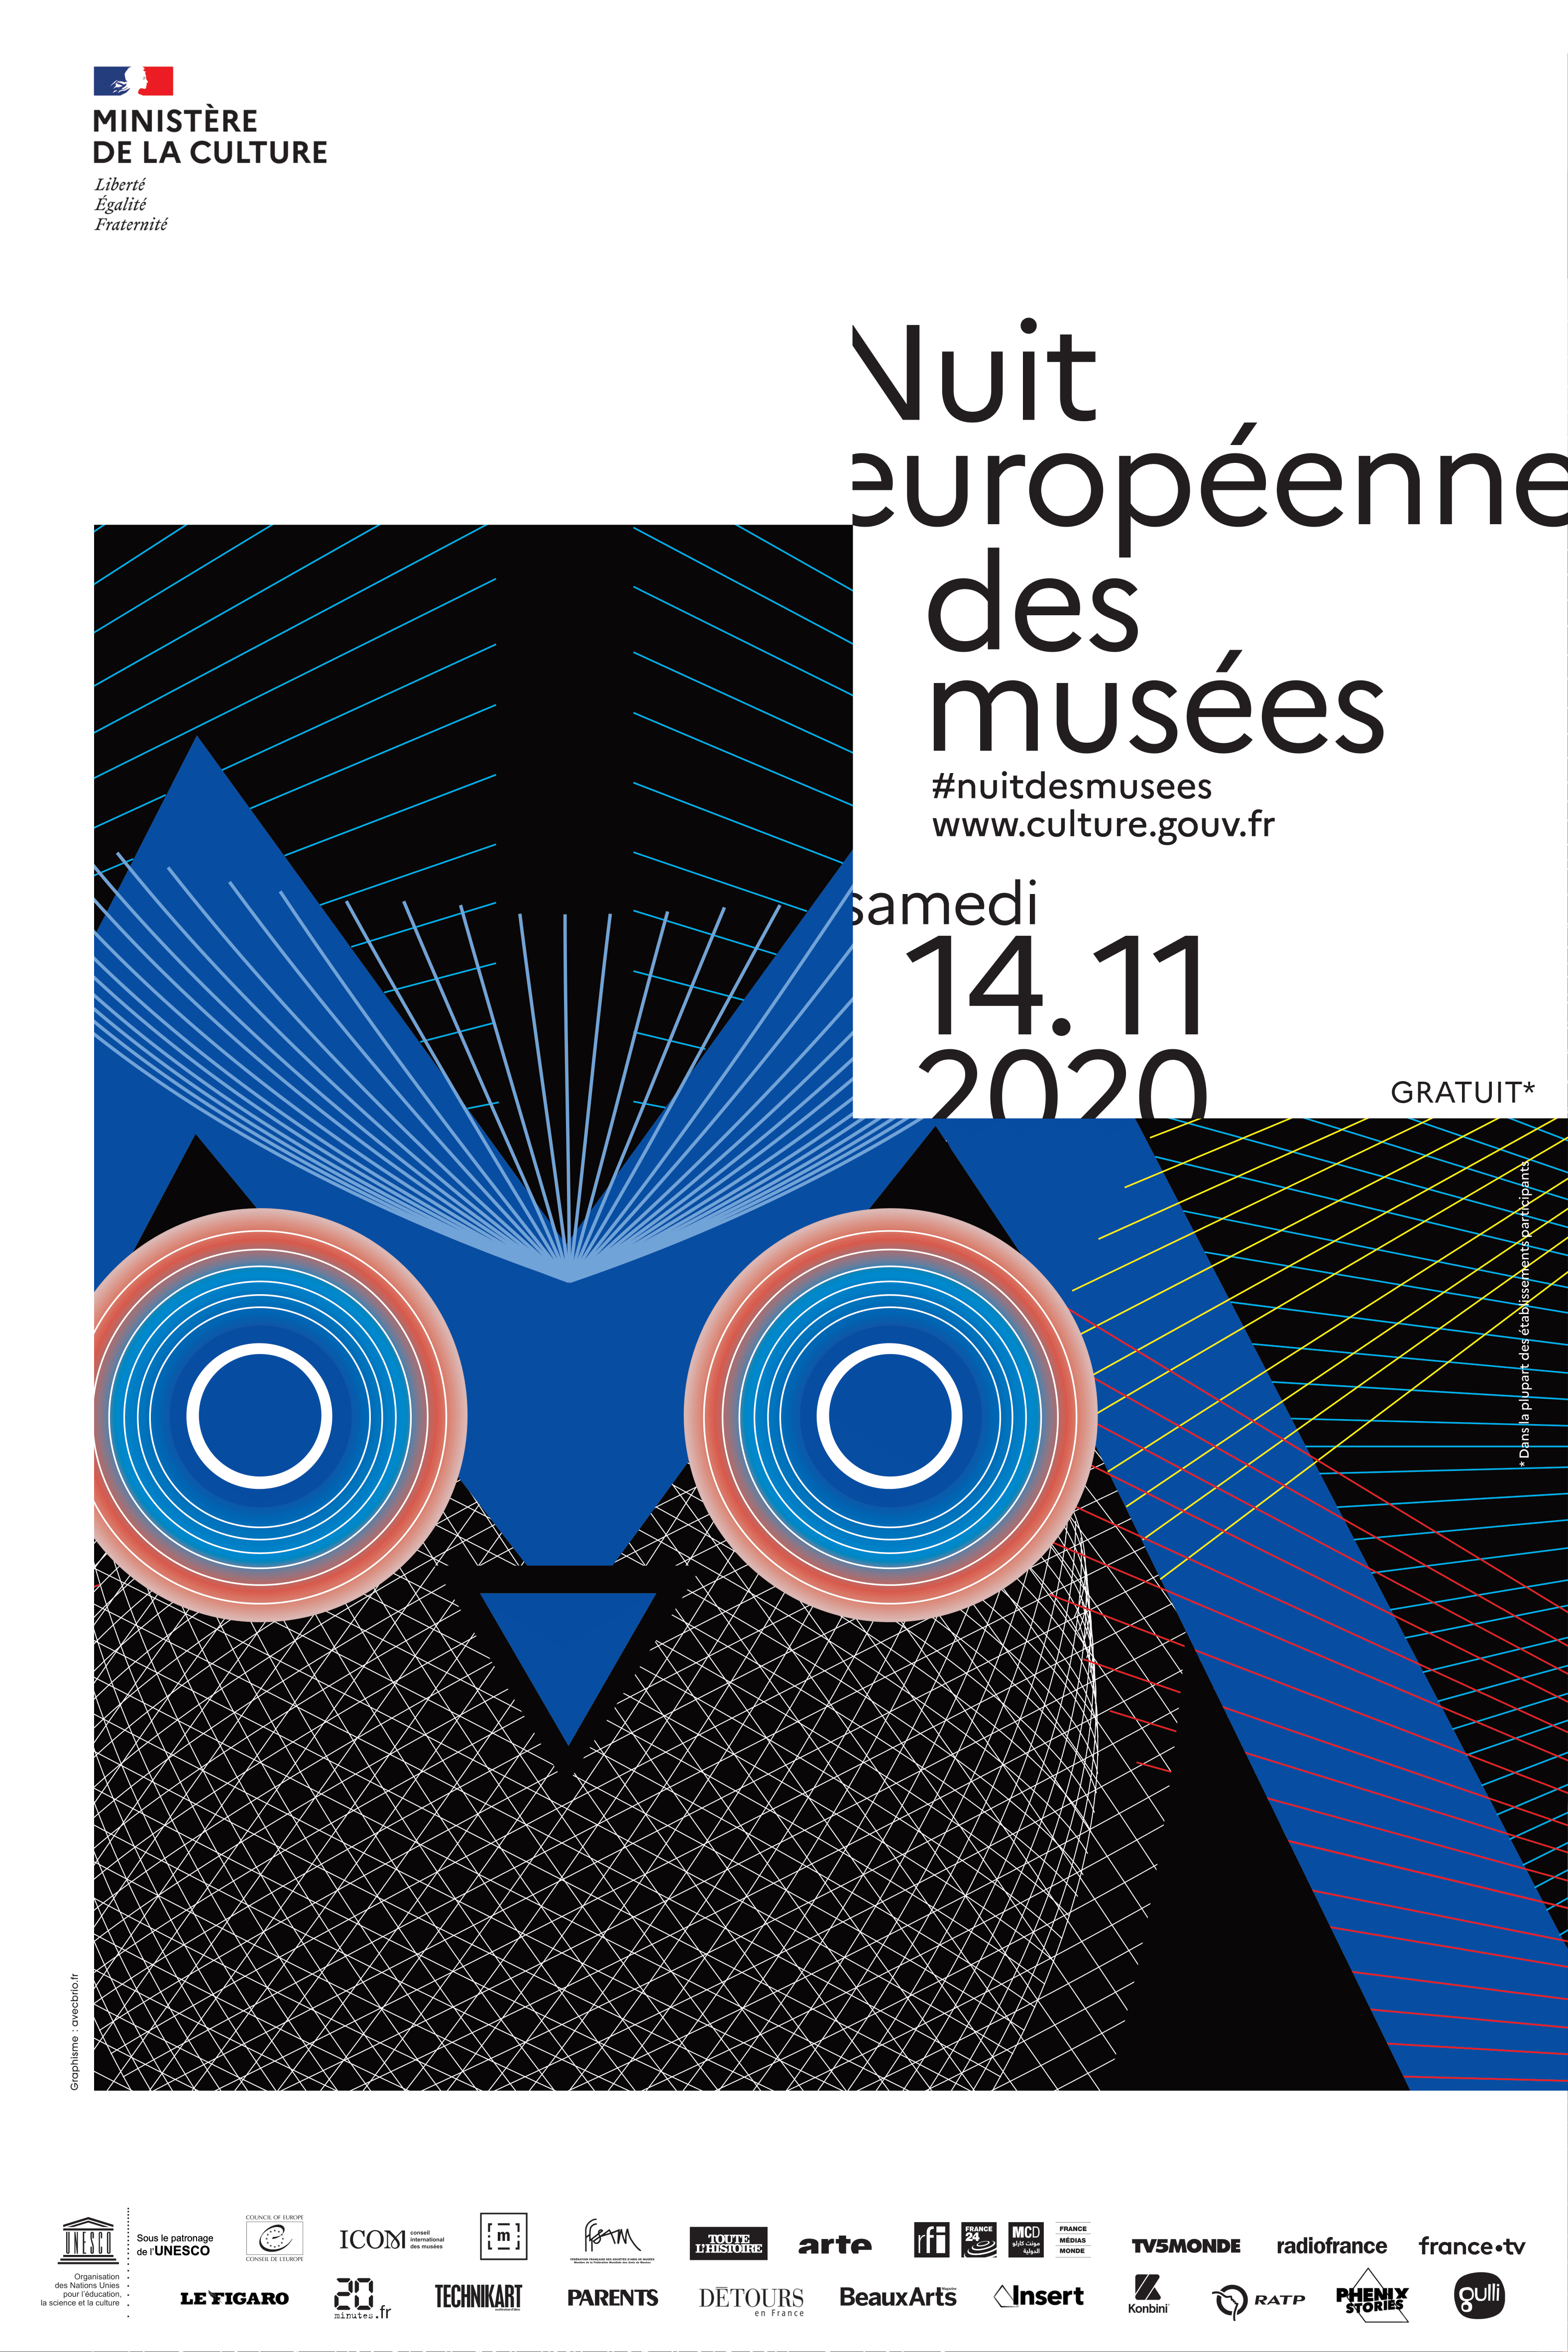 La Nuit européenne des musées